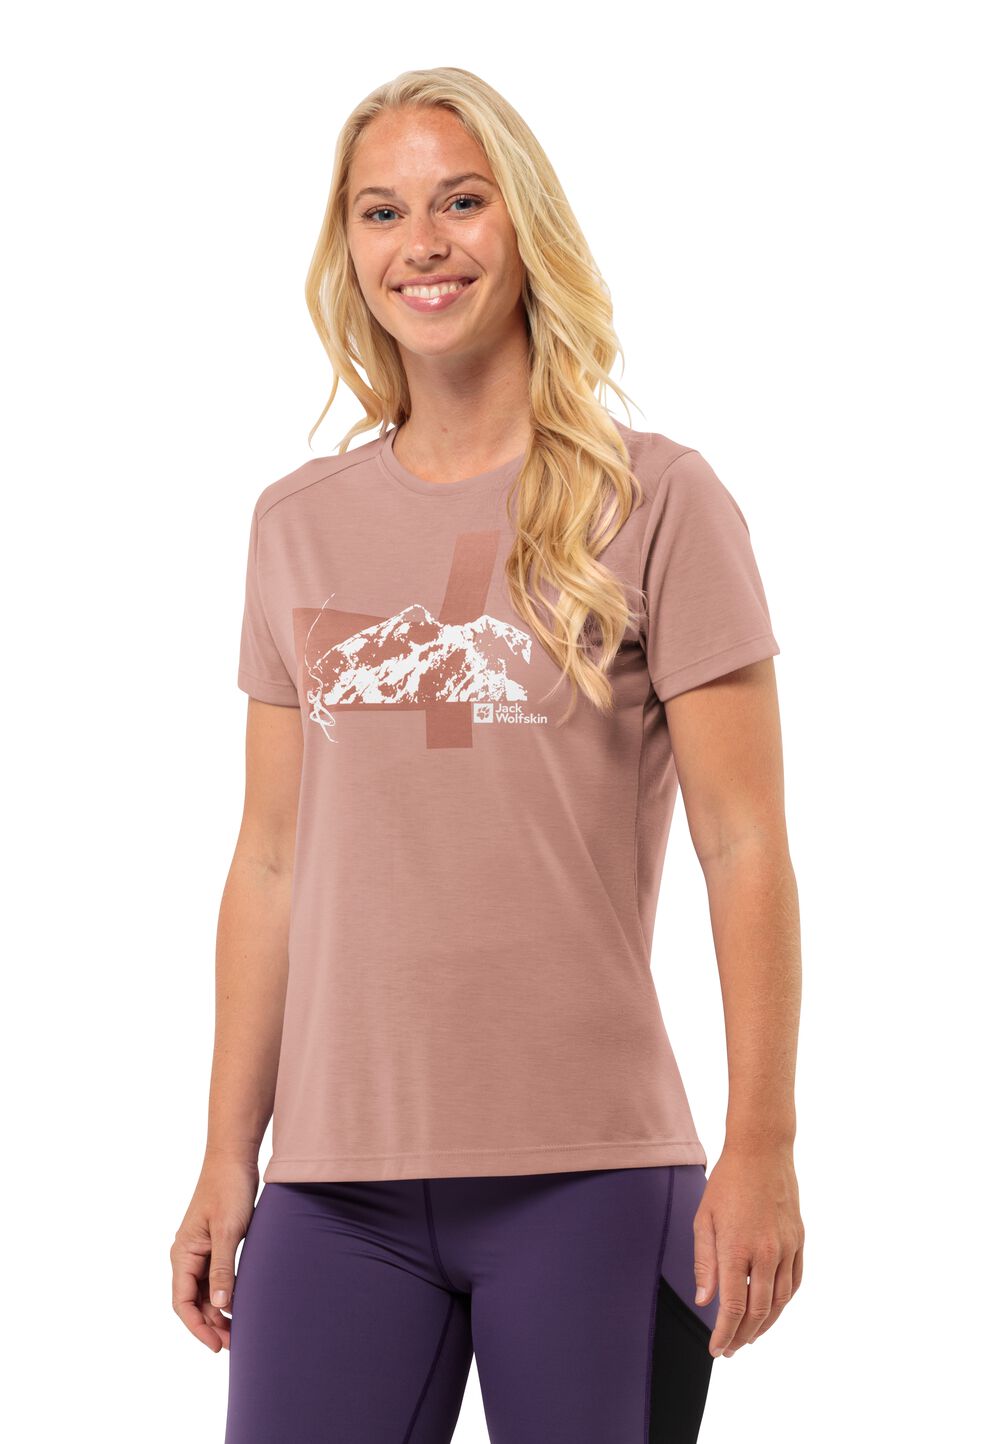 Jack Wolfskin Vonnan S S Graphic T-Shirt Women Functioneel shirt Dames M bruin rose dawn